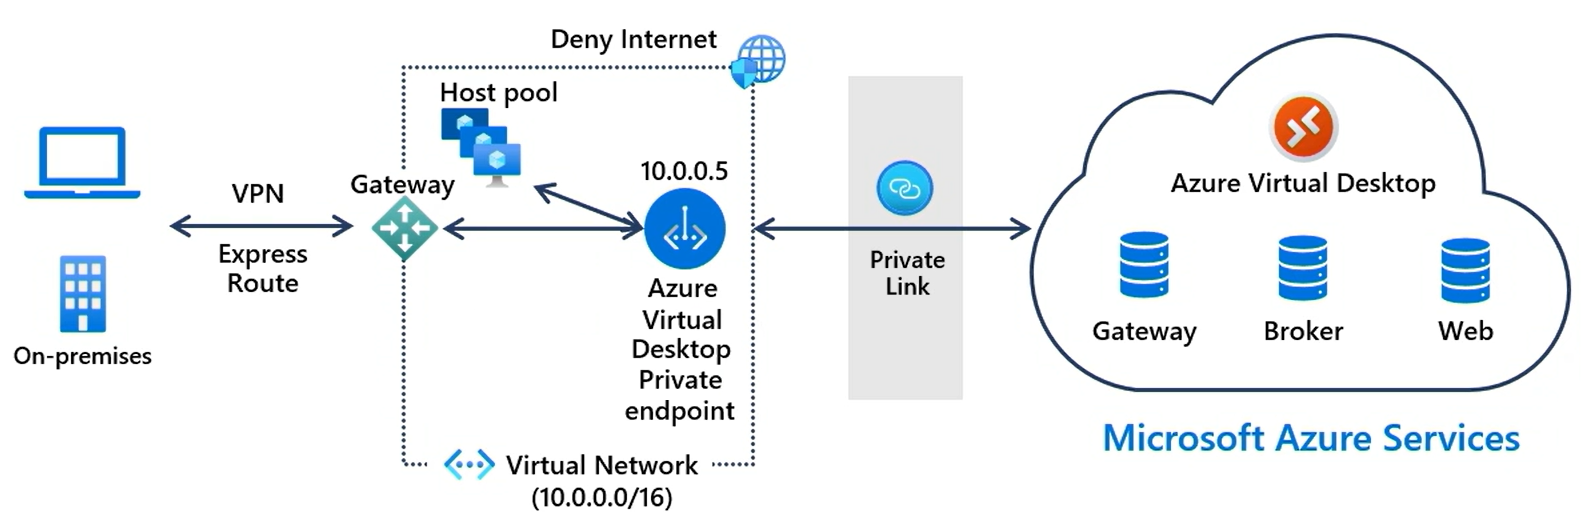 顯示將本機用戶端連線至 Azure 虛擬桌面服務的私人連結的高階圖表。